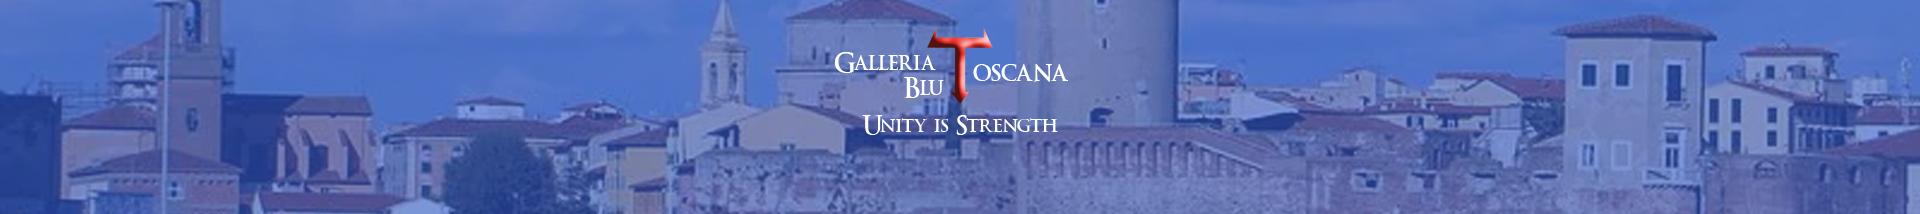 Galleria_Blu_Toscana banner